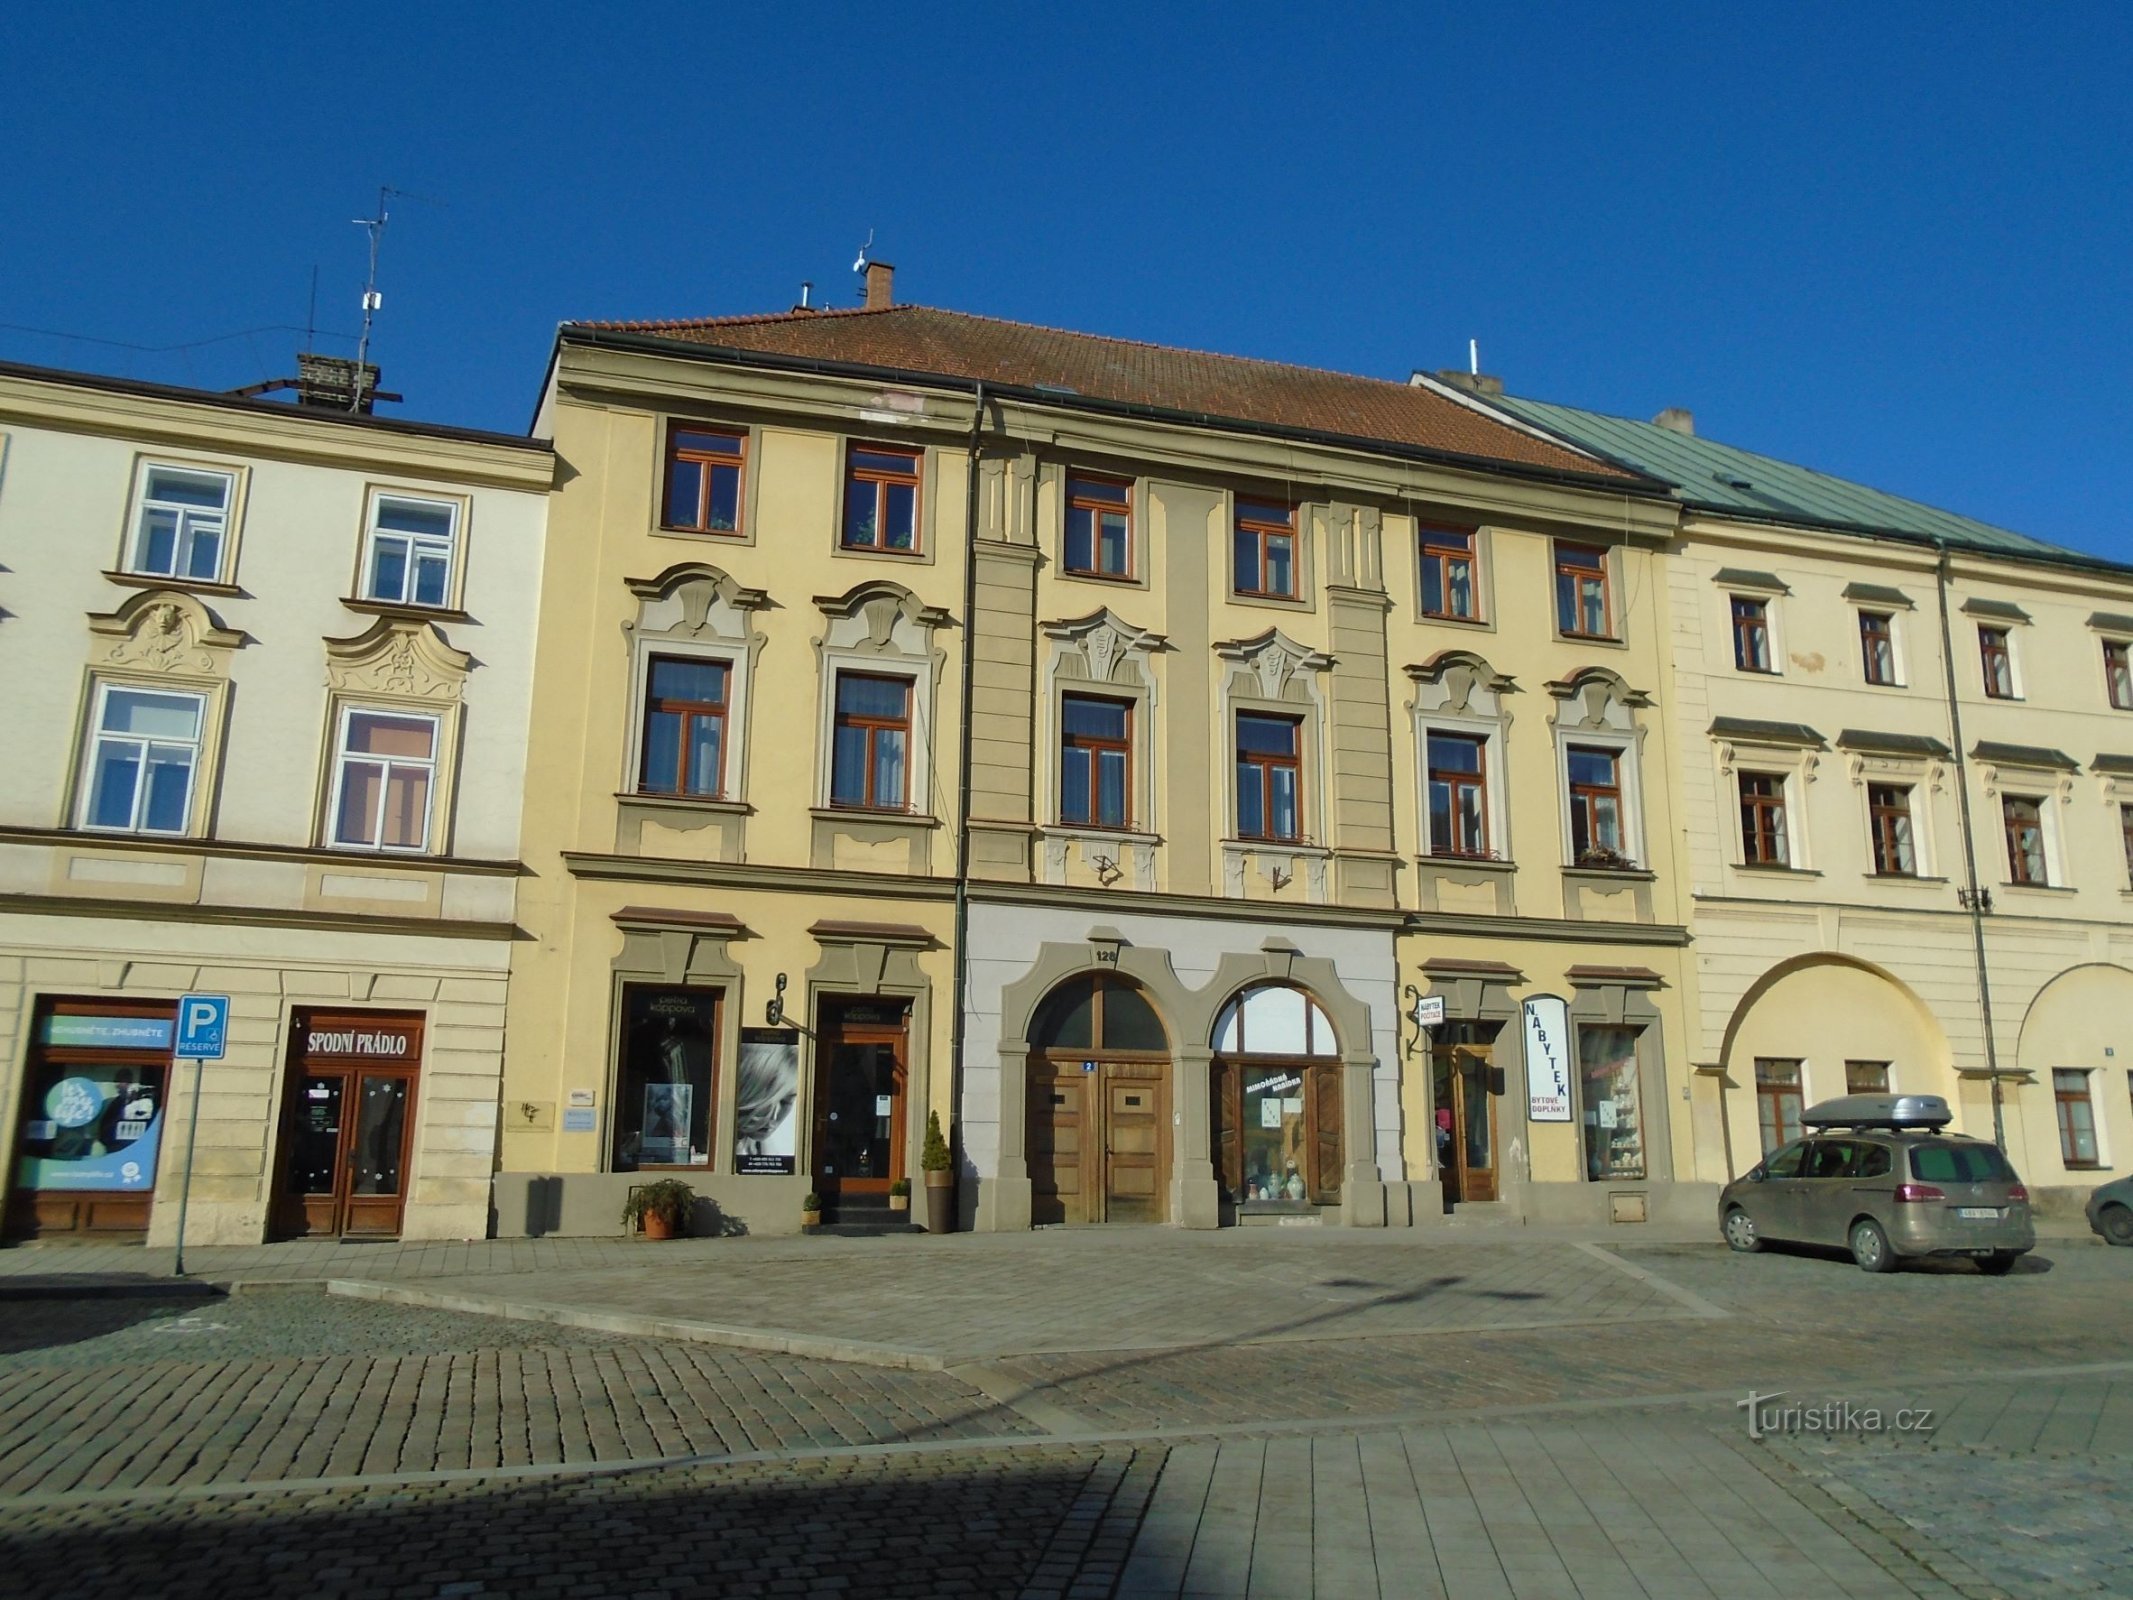 Malé náměstí nr. 128 (Hradec Králové, 25.2.2018. april XNUMX)